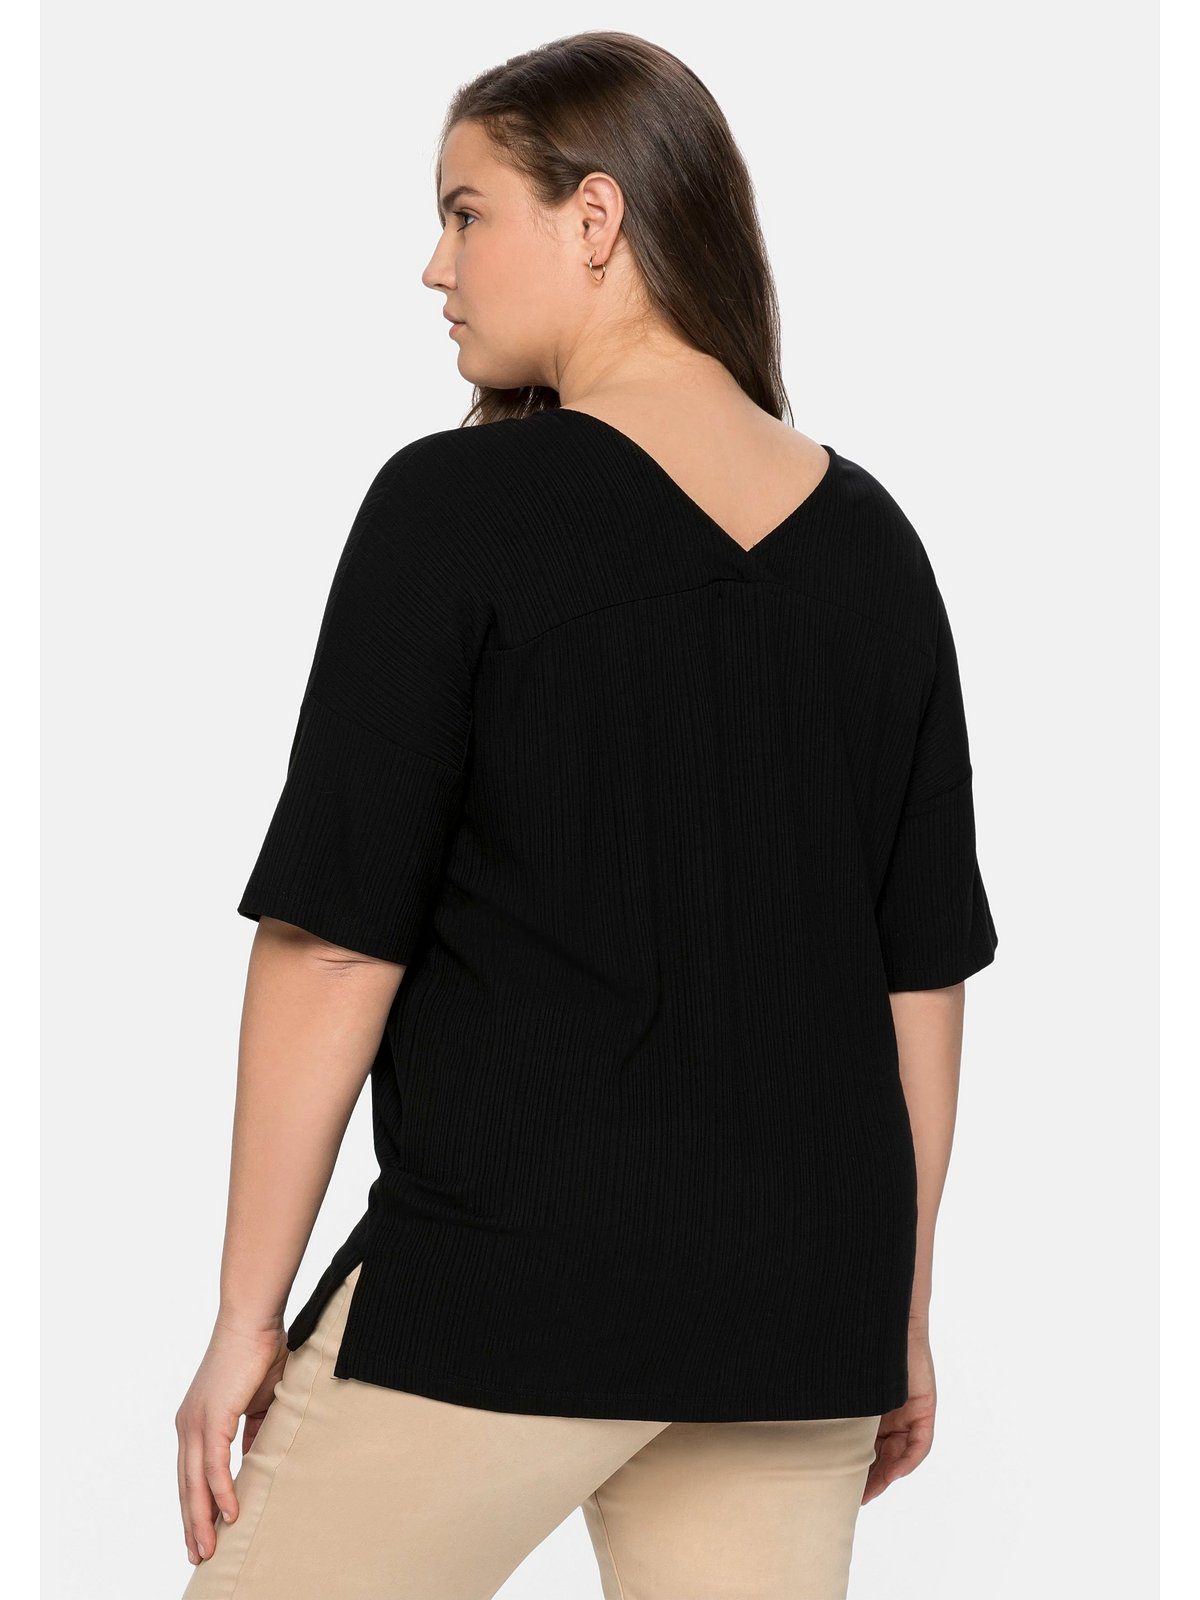 Sheego T-Shirt Große Größen im Streifenlook schwarz dezenten